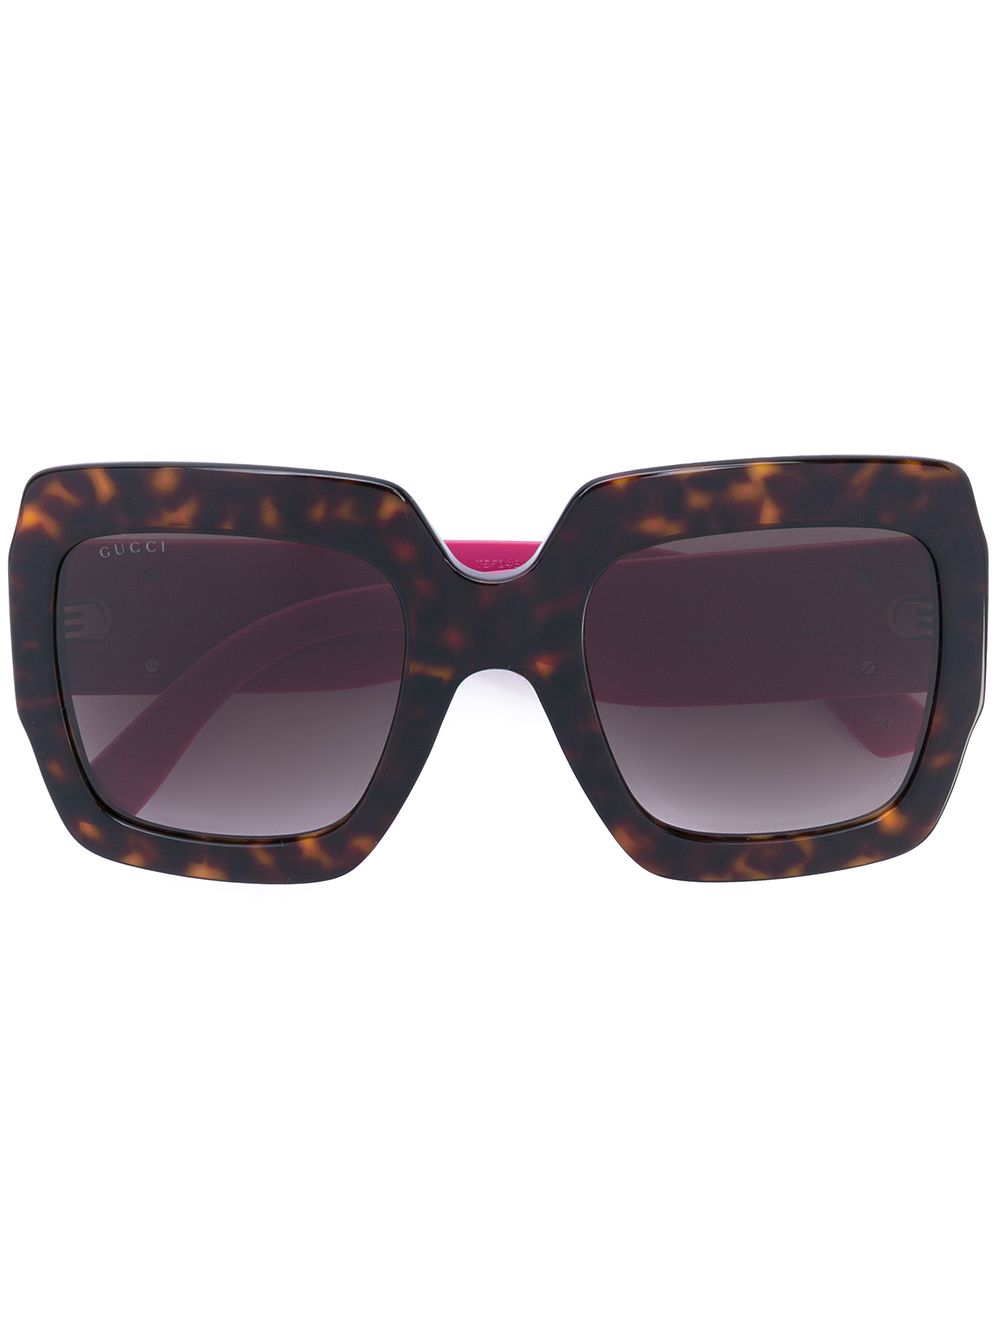 фото Gucci Eyewear массивные солнцезащитные очки в оправе с эффектом черепашьего панциря